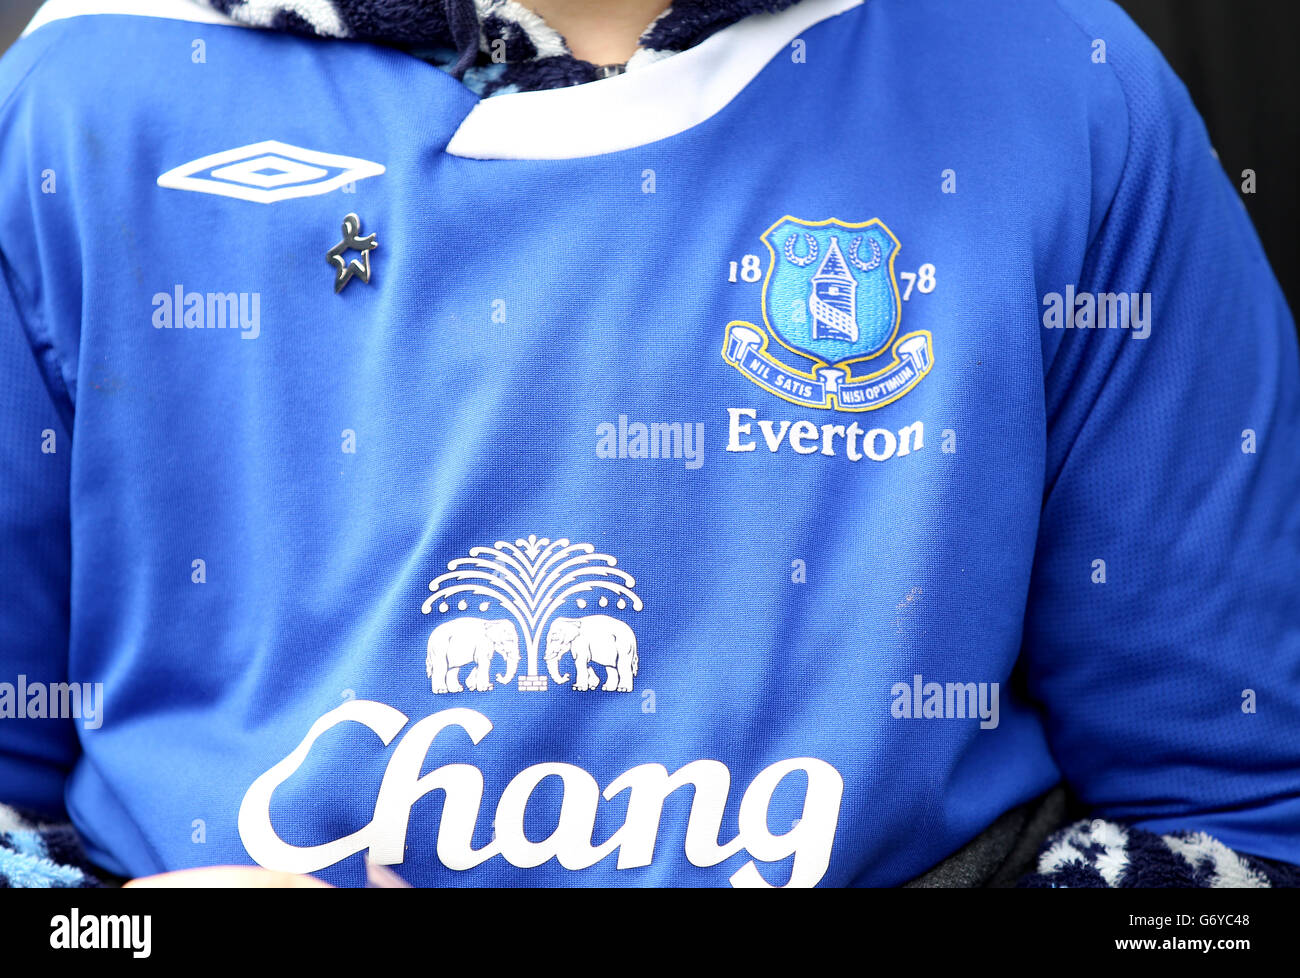 Vue détaillée d'un maillot Everton avec les logos Umbro, club et Chang  Photo Stock - Alamy